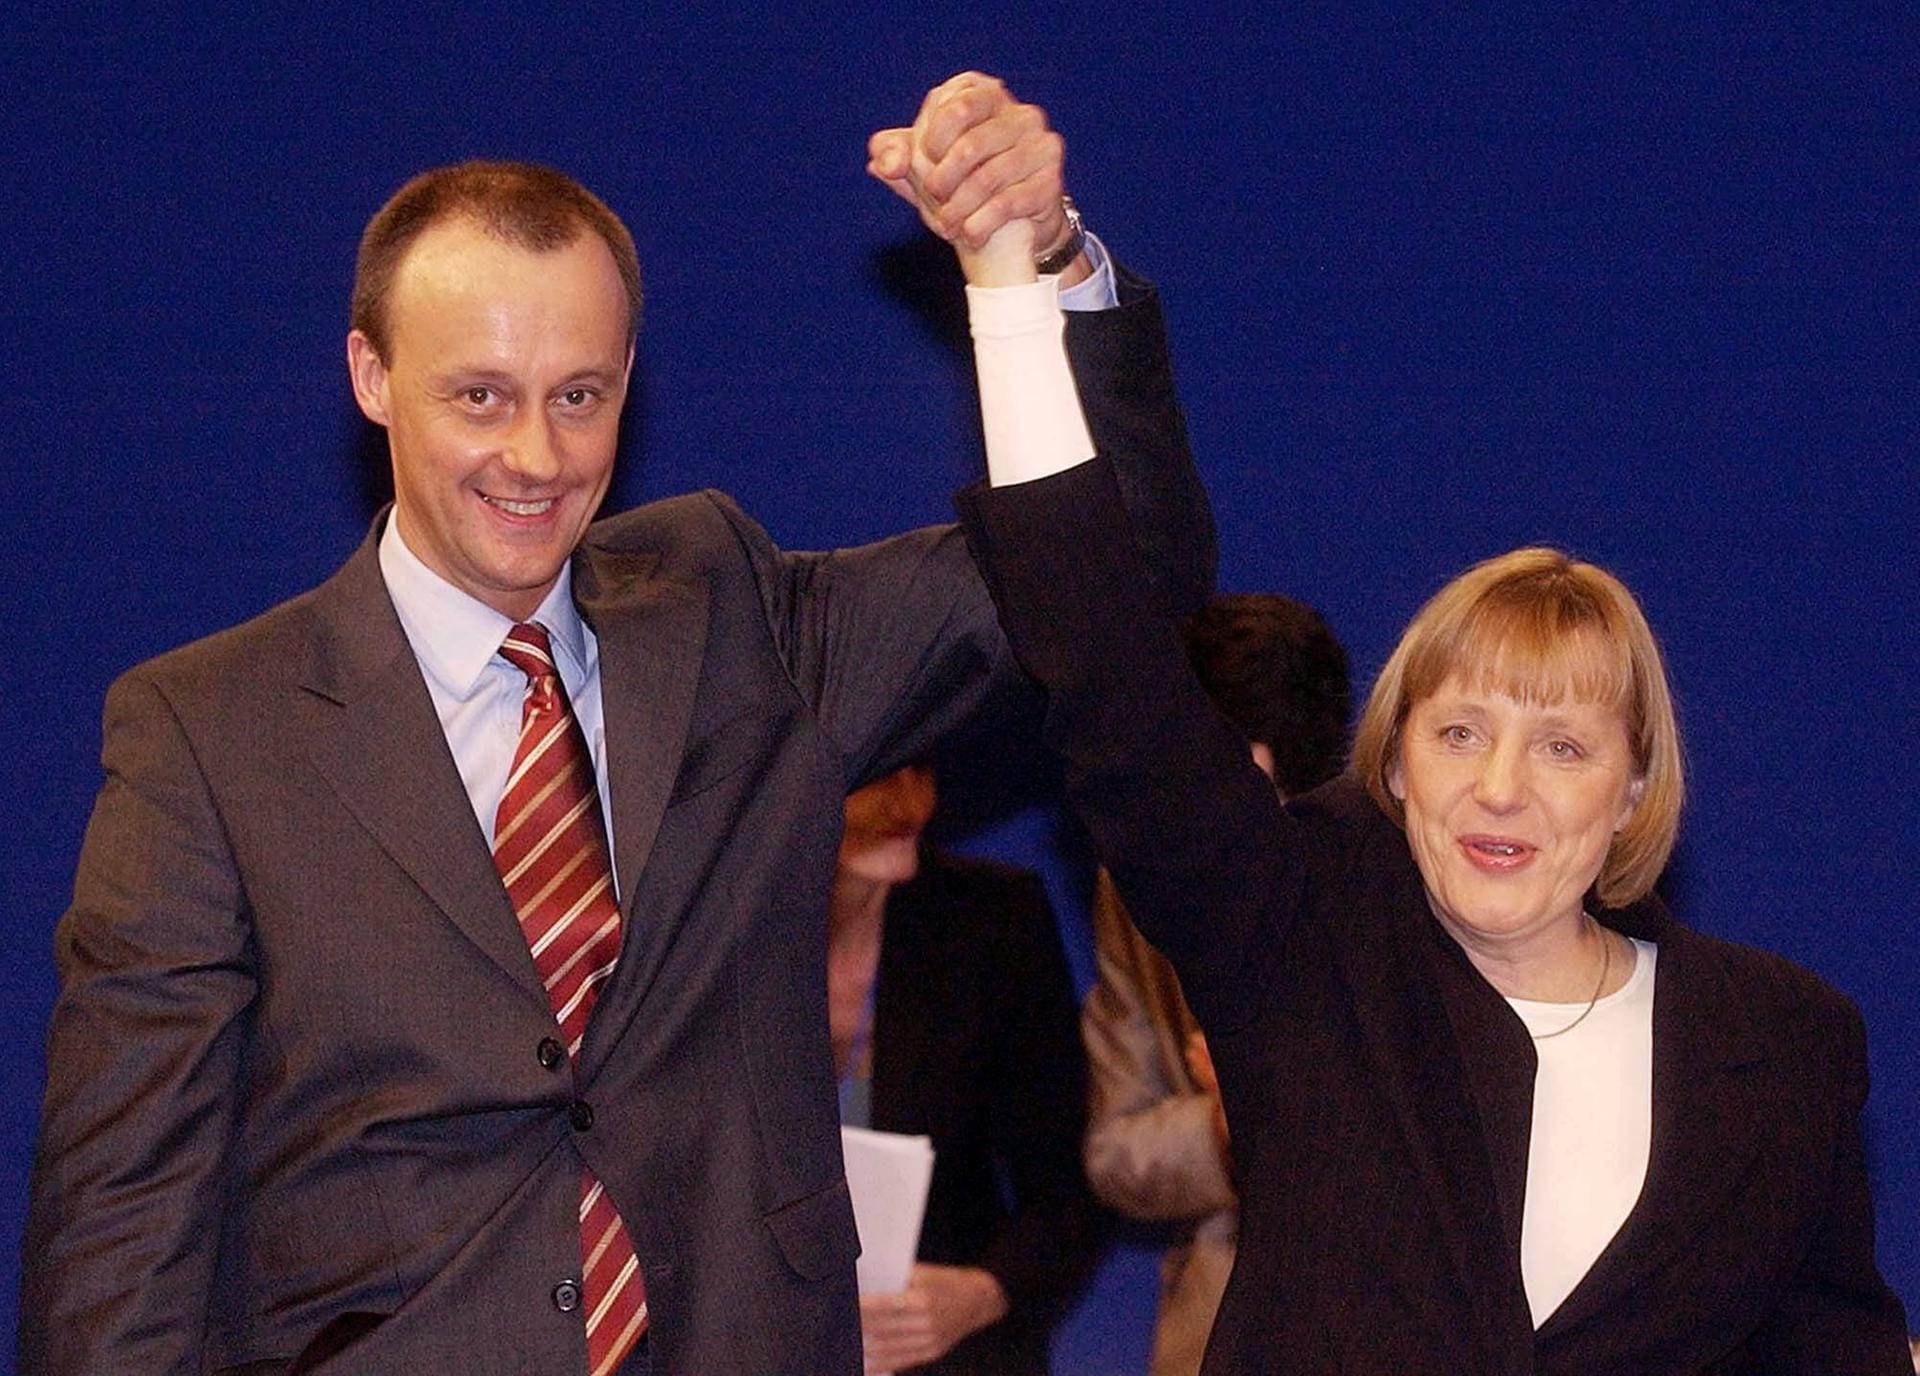 Kein Team auf Dauer: der neue Fraktionsvorsitzende Friedrich Merz und die neue Parteivorsitzende Merkel. Schäuble trat im Februar 2000 zurück, Merkel gewann in Regionalkonferenzen Unterstützung und wurde am 10. April zur CDU-Vorsitzenden gewählt.